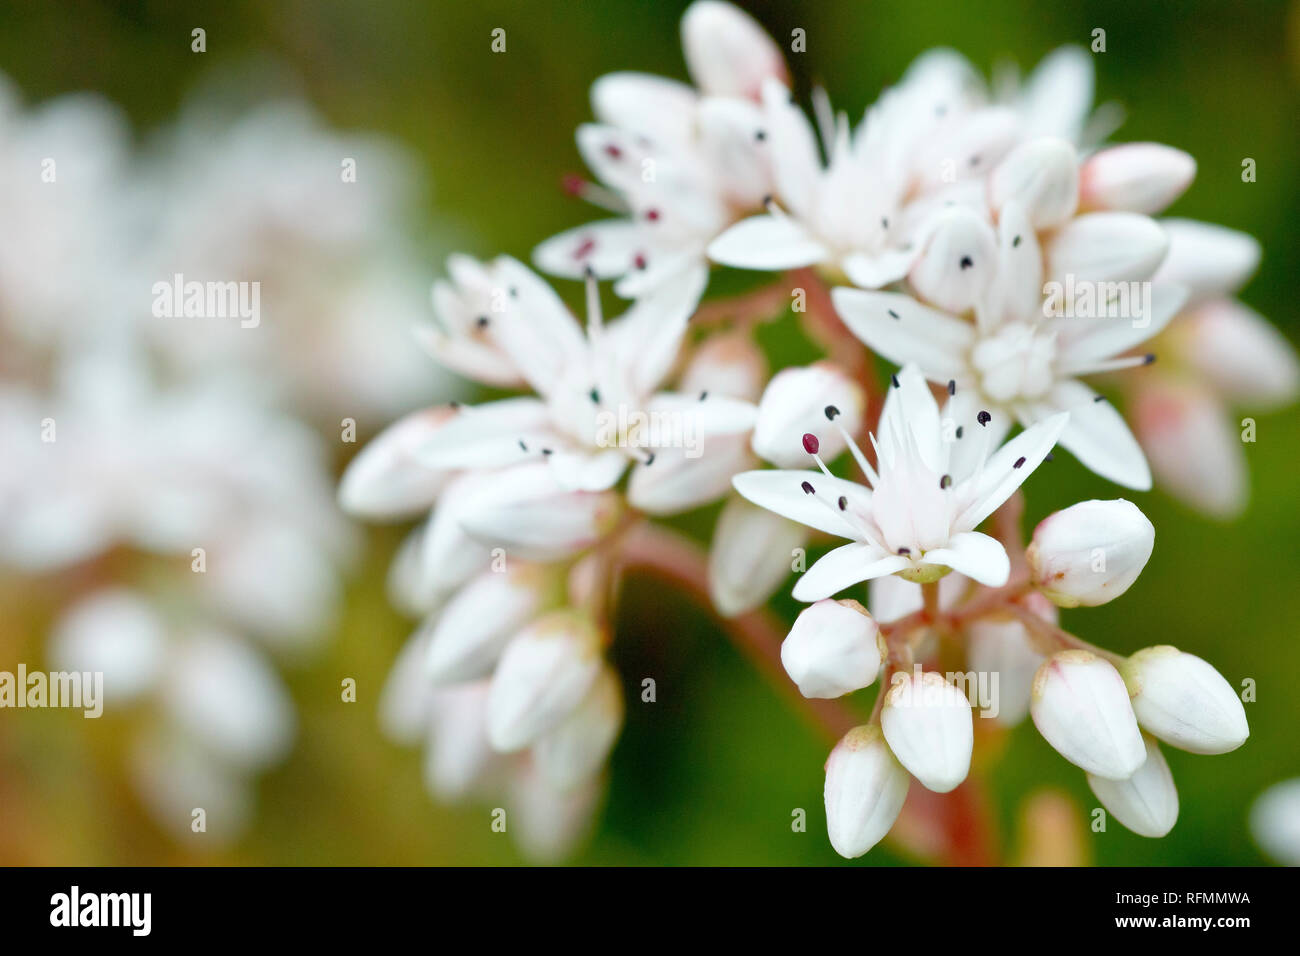 Orpin blanc (sedum album), close up d'une grappe de fleurs et bourgeons avec une faible profondeur de champ. Banque D'Images